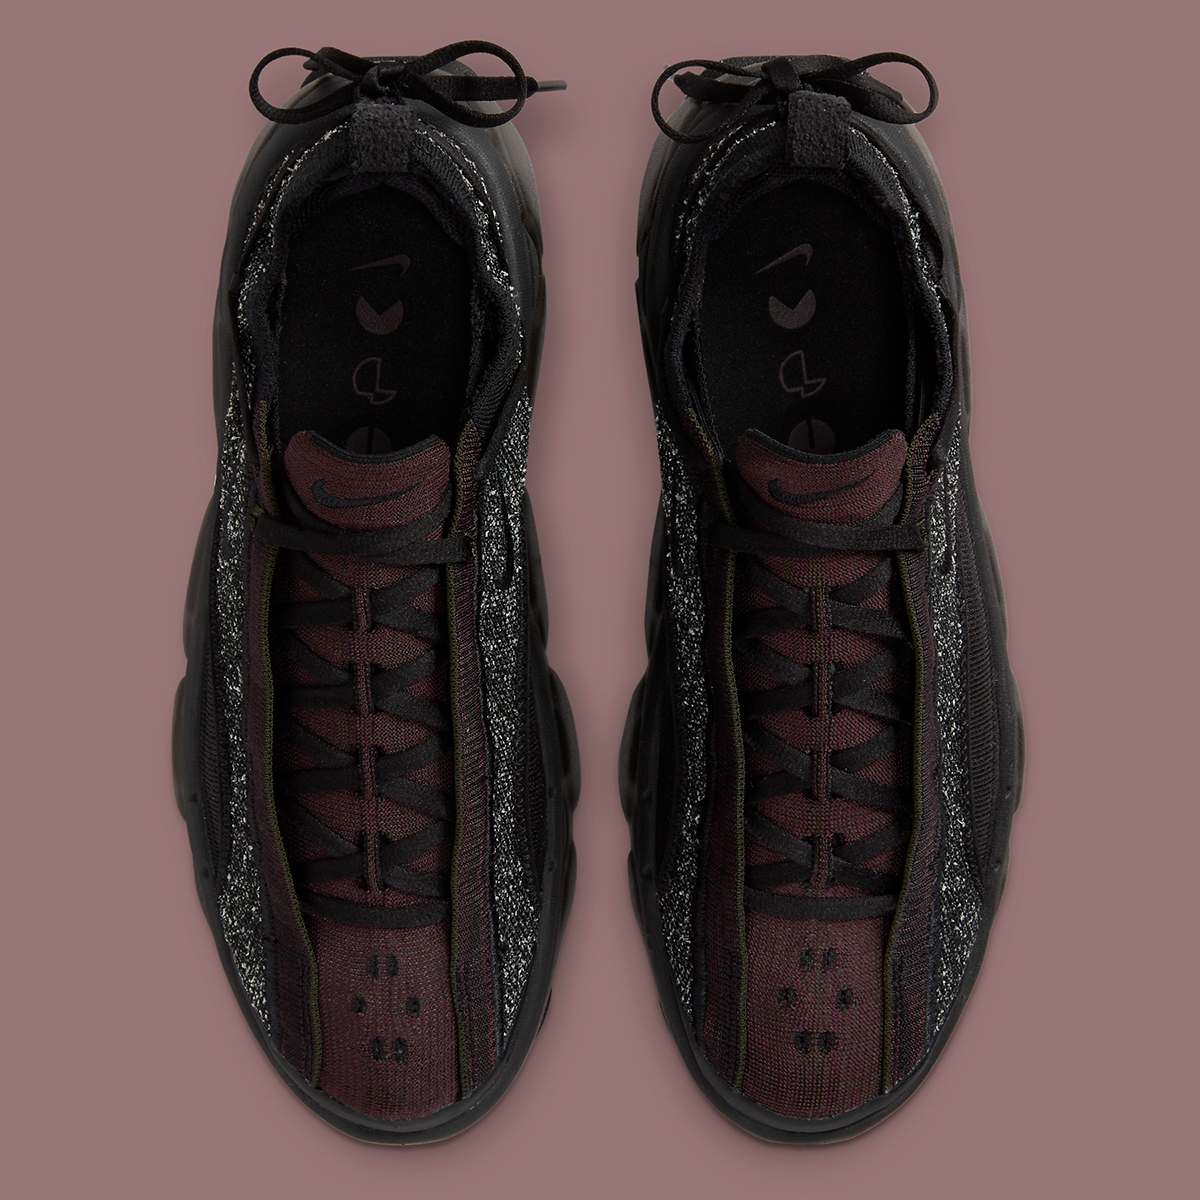 Nike Botas Manoa Leather Fd2149 001 2